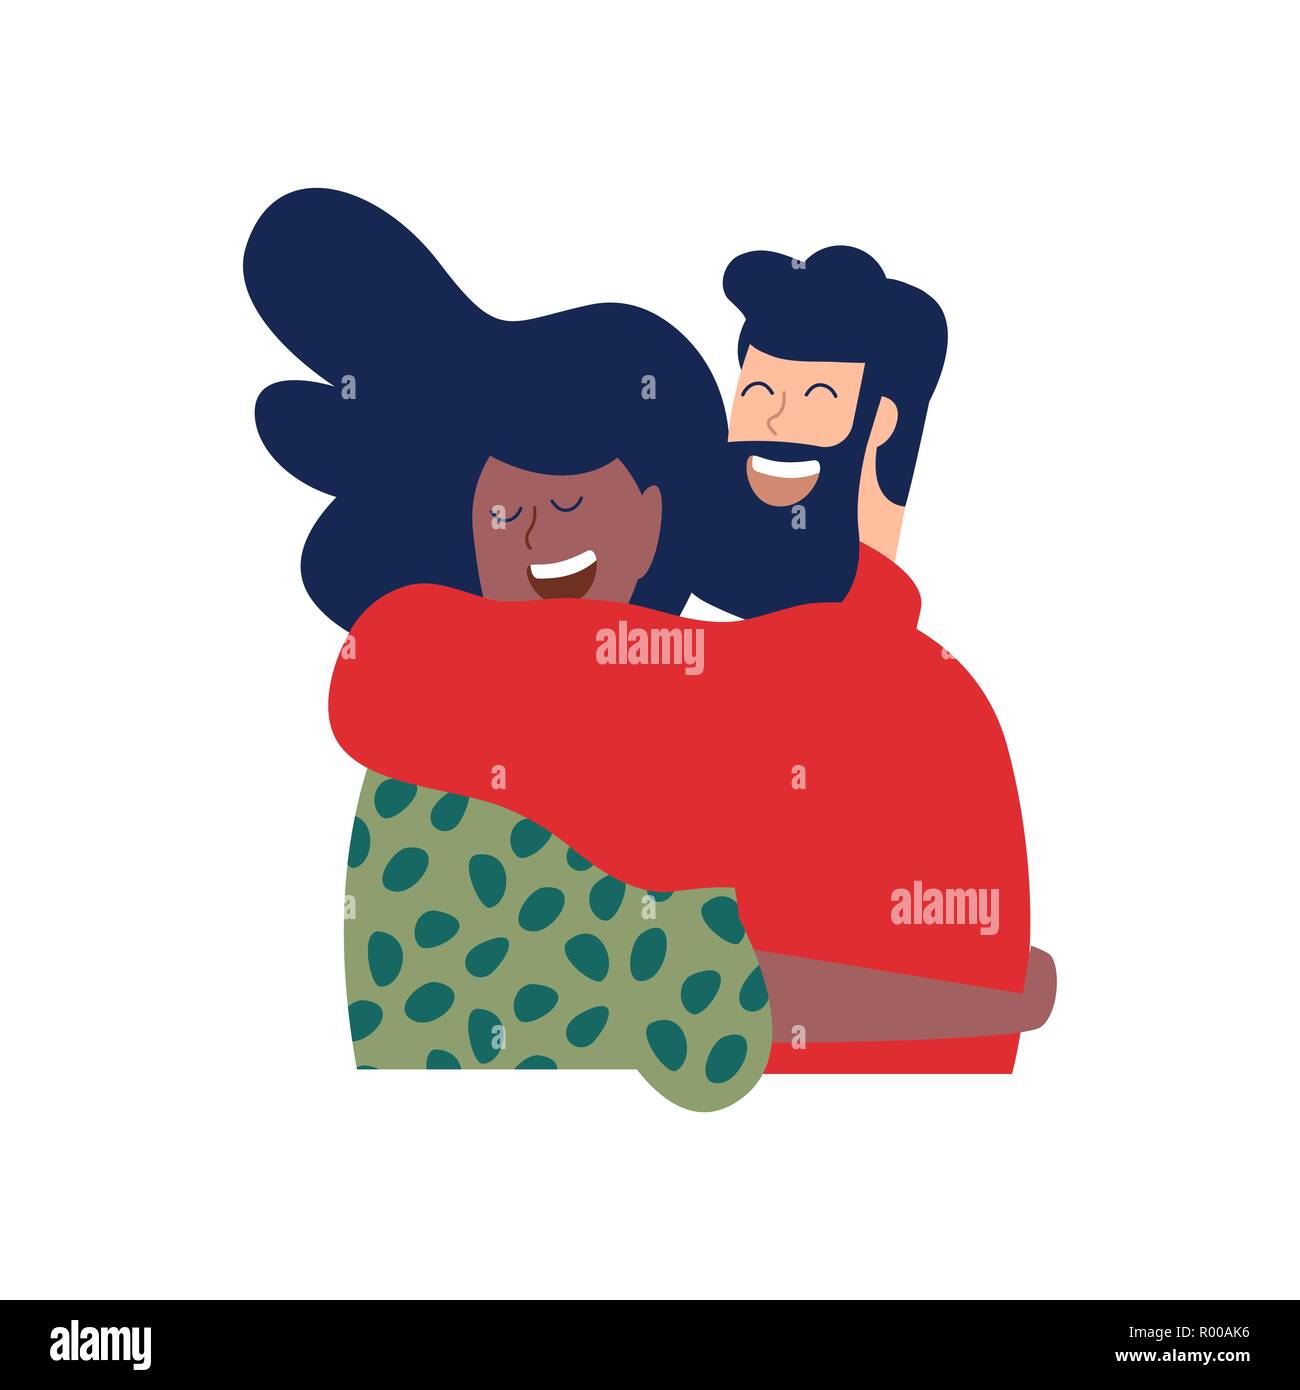 Deux amis ou romantique couple hugging and smiling together in noël des vêtements d'hiver. Les gens heureux divers illustration relation isolées sur des ba Illustration de Vecteur